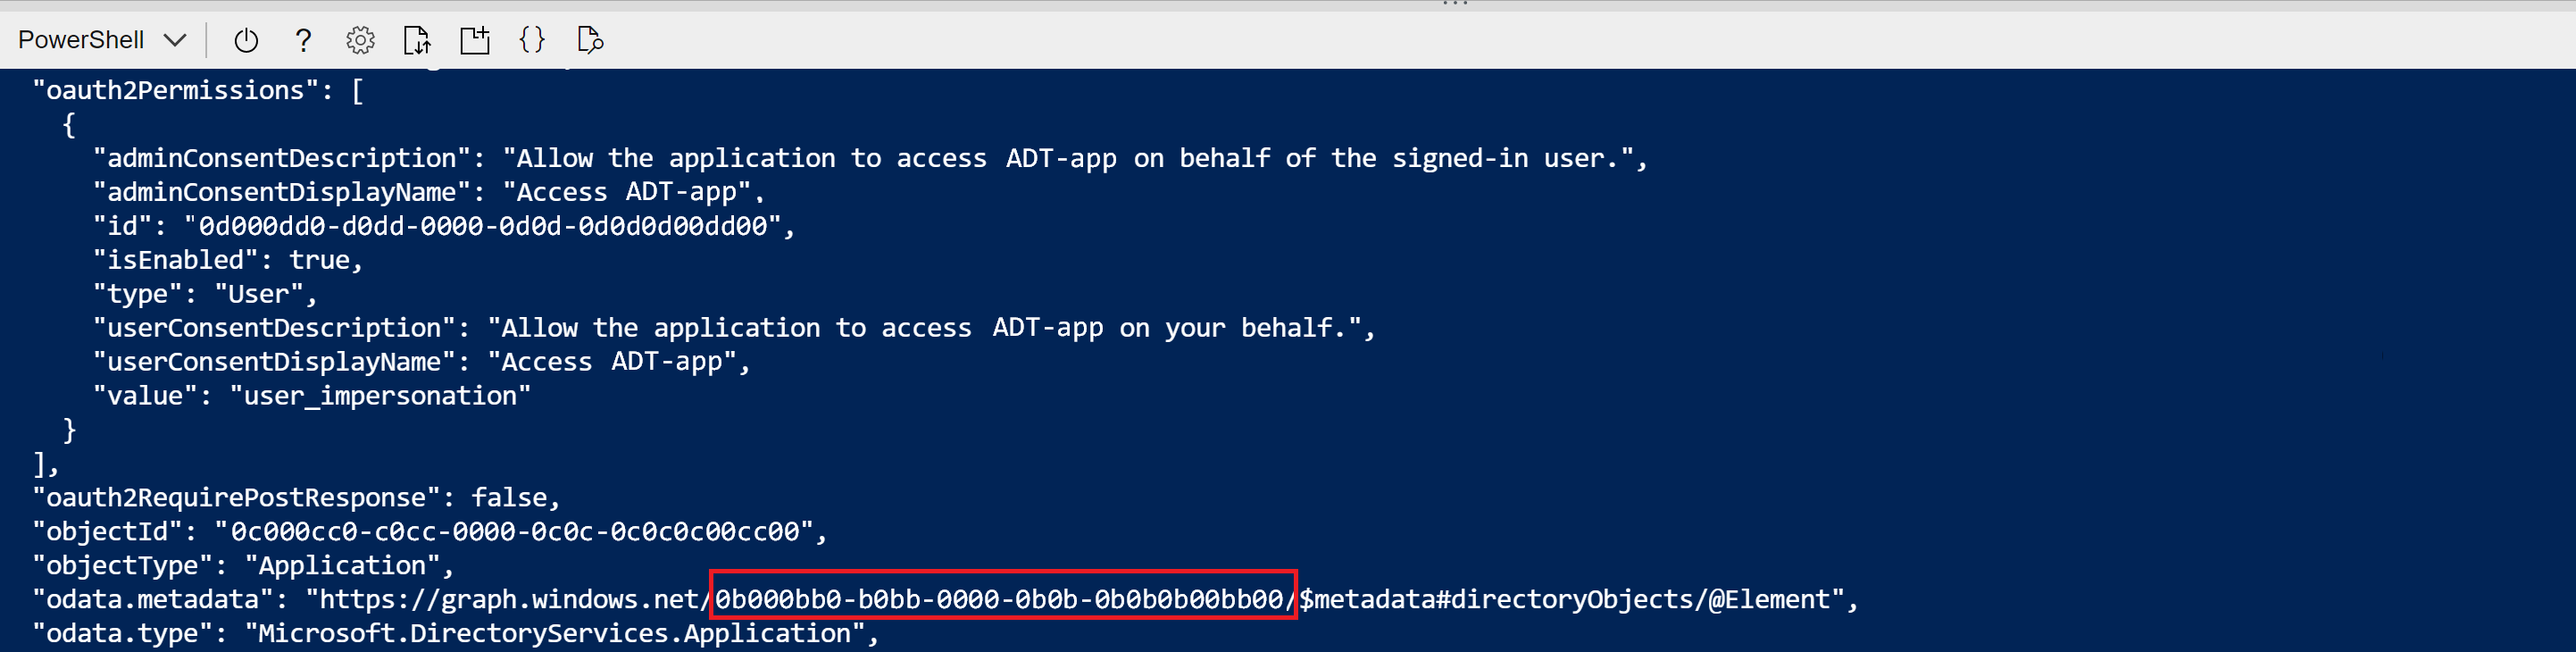 Capture d’écran de la sortie de Cloud Shell de la commande de création d’inscription d’application. La valeur GUID dans odata.metadata est mise en évidence.